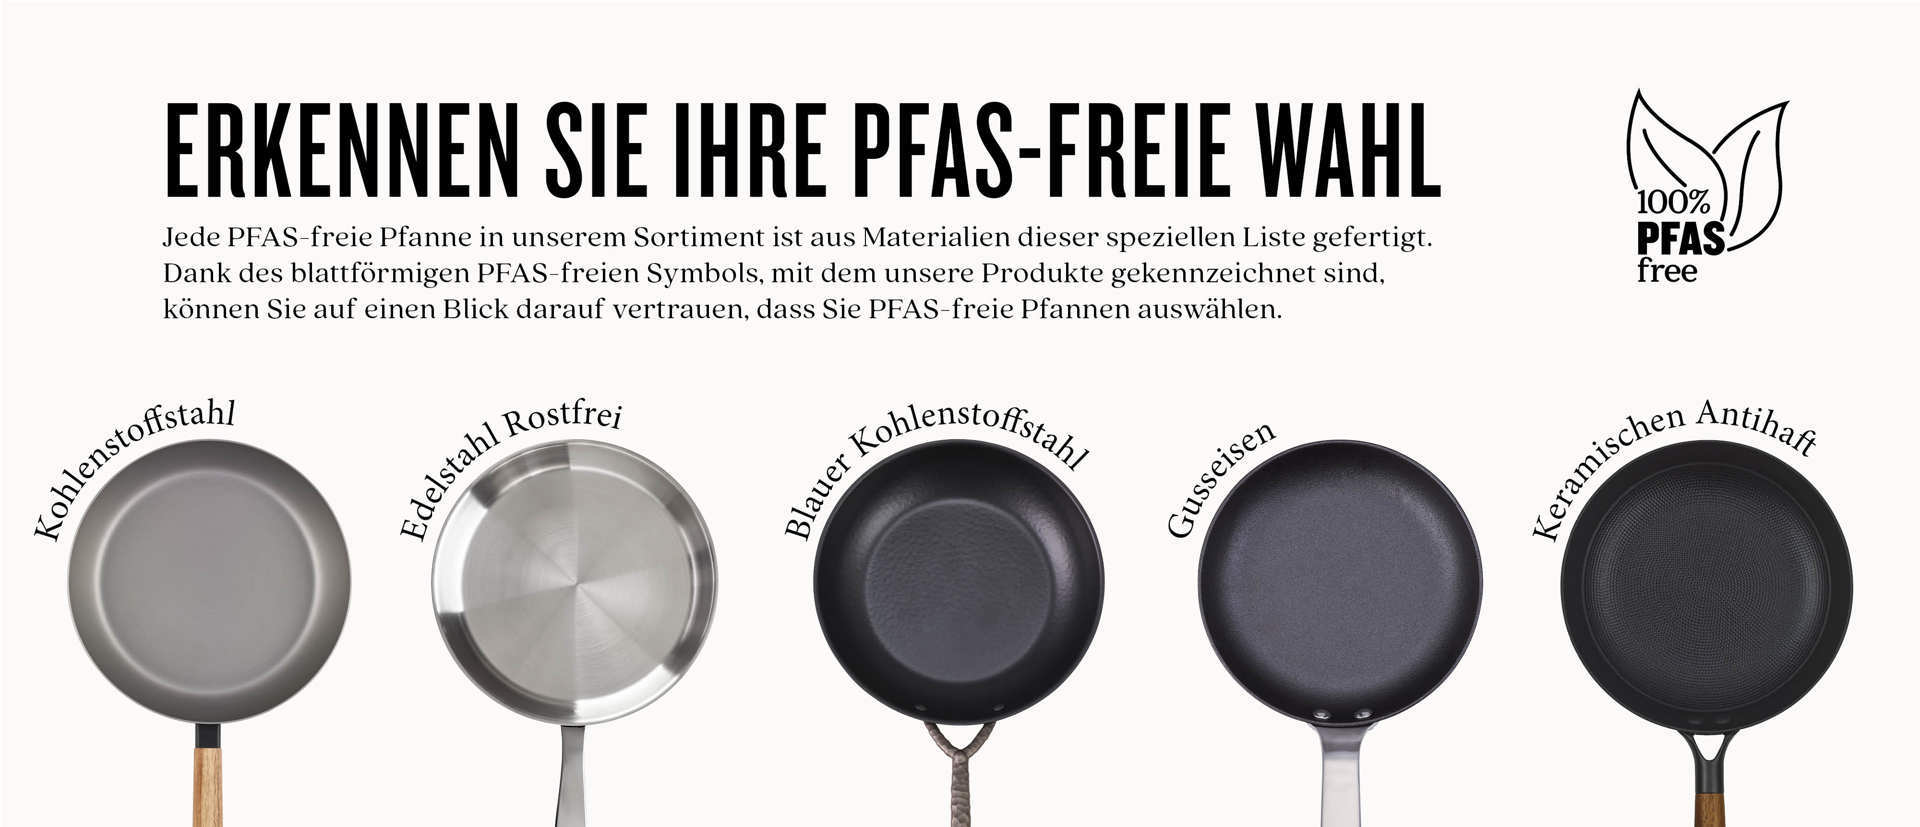 PFAS-free kochen